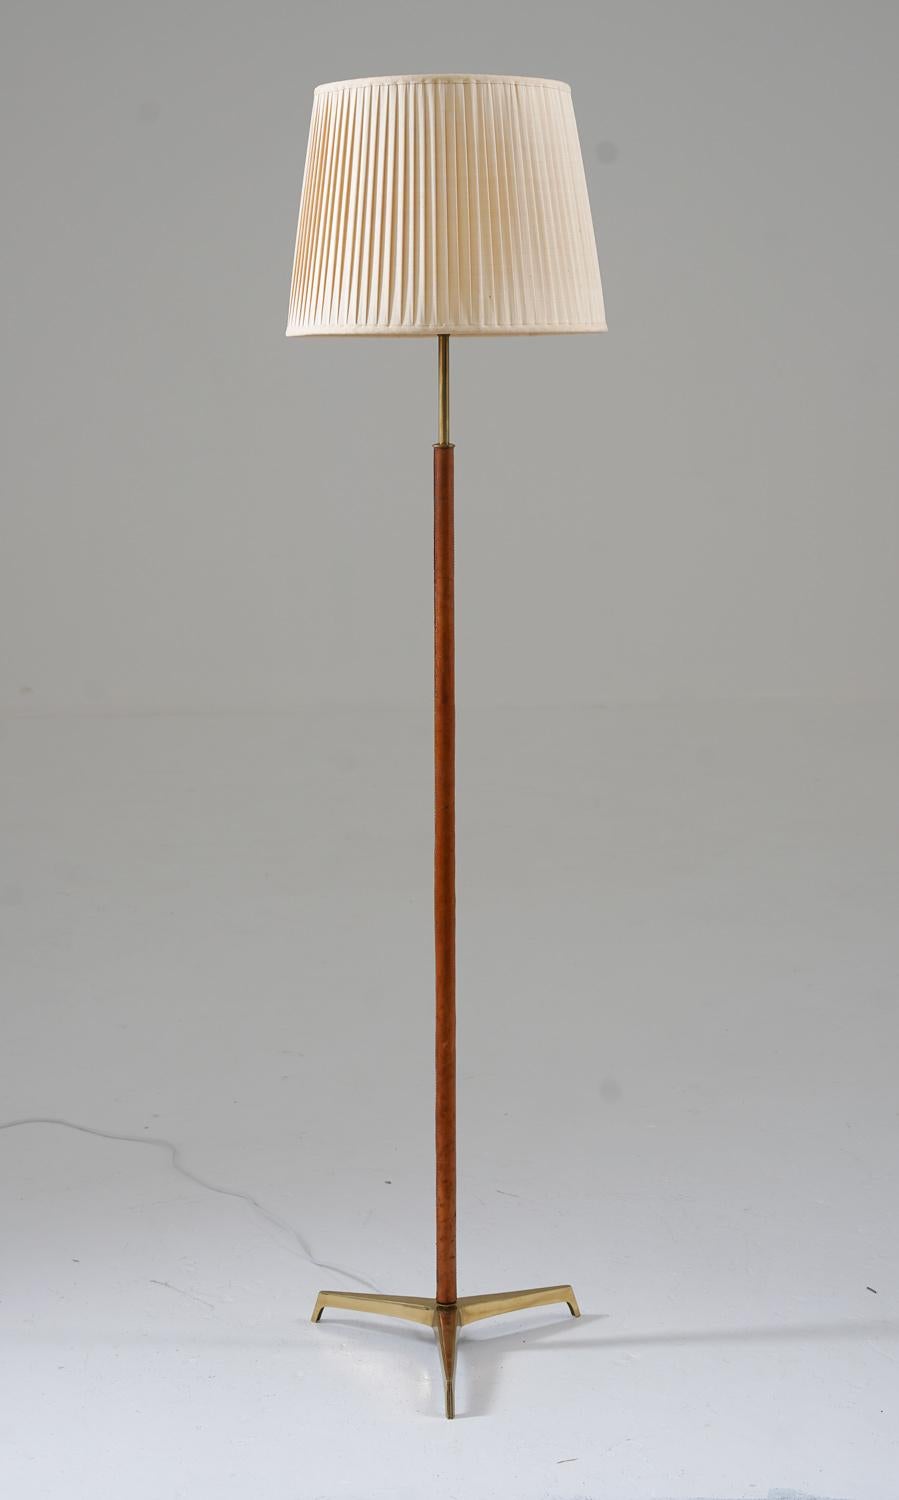 Skandinavische Stehlampe aus der Mitte des Jahrhunderts aus Messing und Leder, hergestellt in Schweden, 1960er Jahre.
Diese Lampe besteht aus einem lederbezogenen Messingfuß, der auf einem Dreibeinfuß aus massivem Messing ruht. Die Lampe wird mit